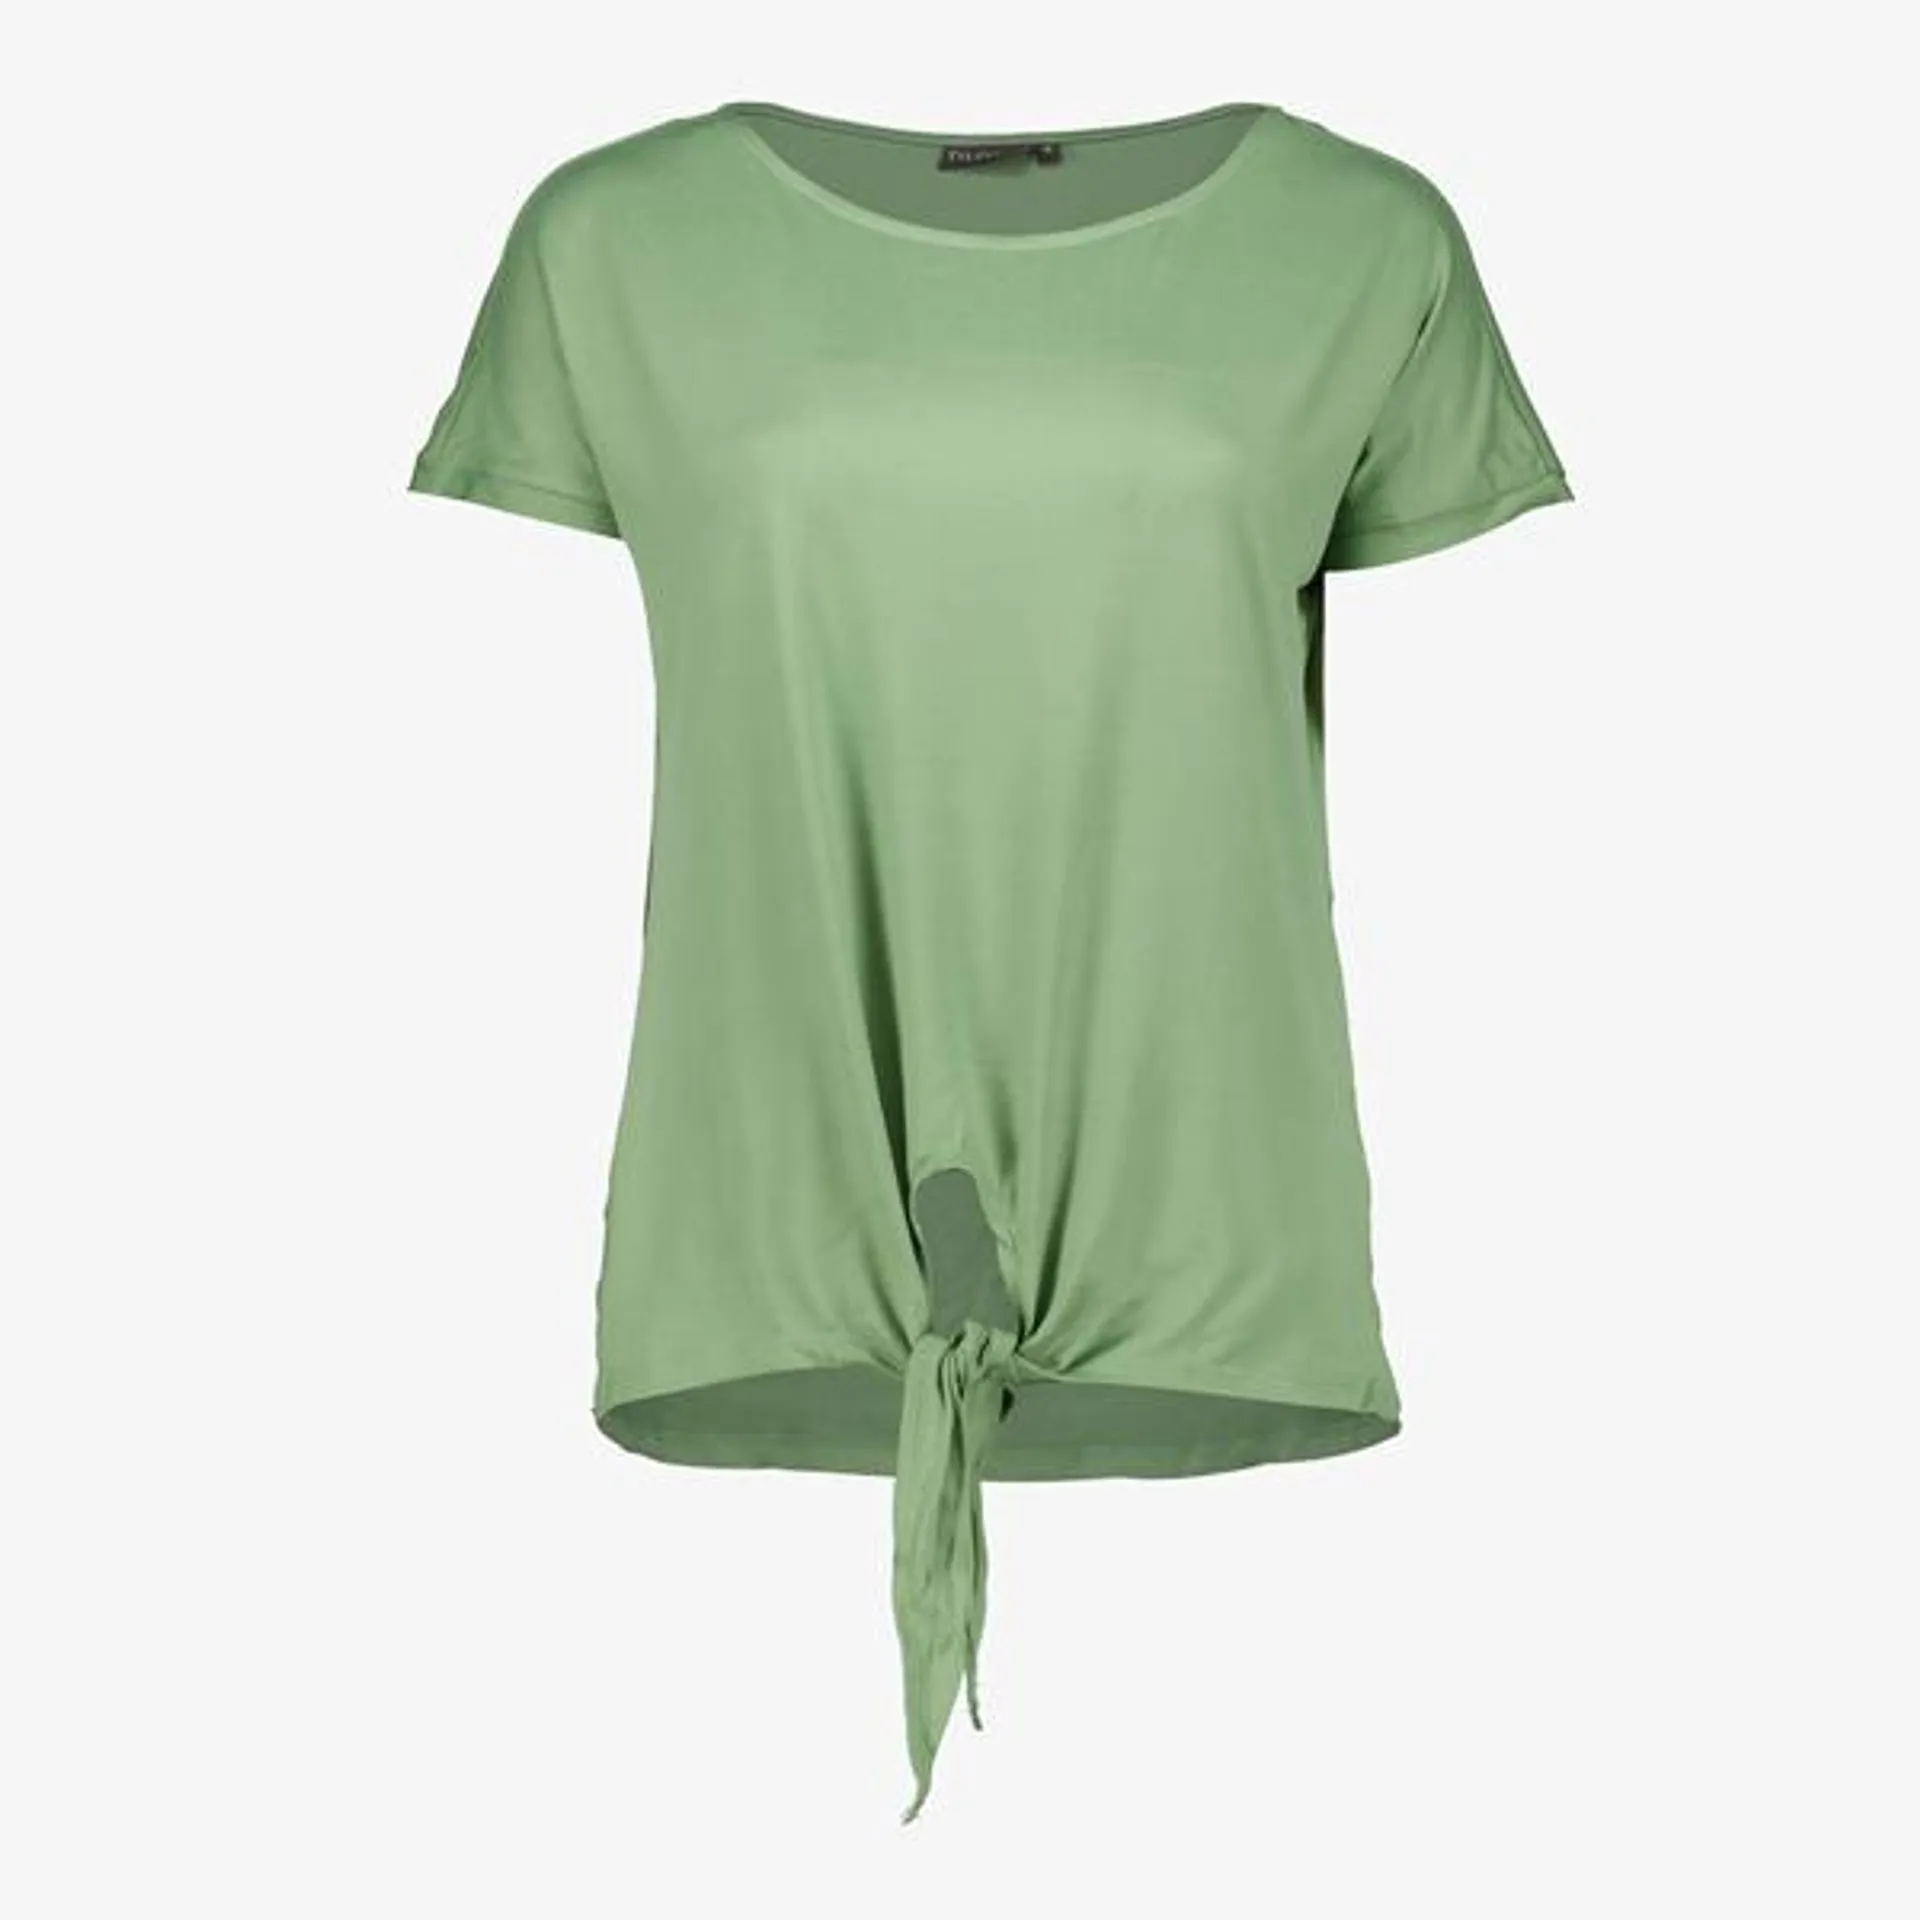 Groen dames T-shirt met knoop uit de TwoDay collectie. Voorzien van een ron...